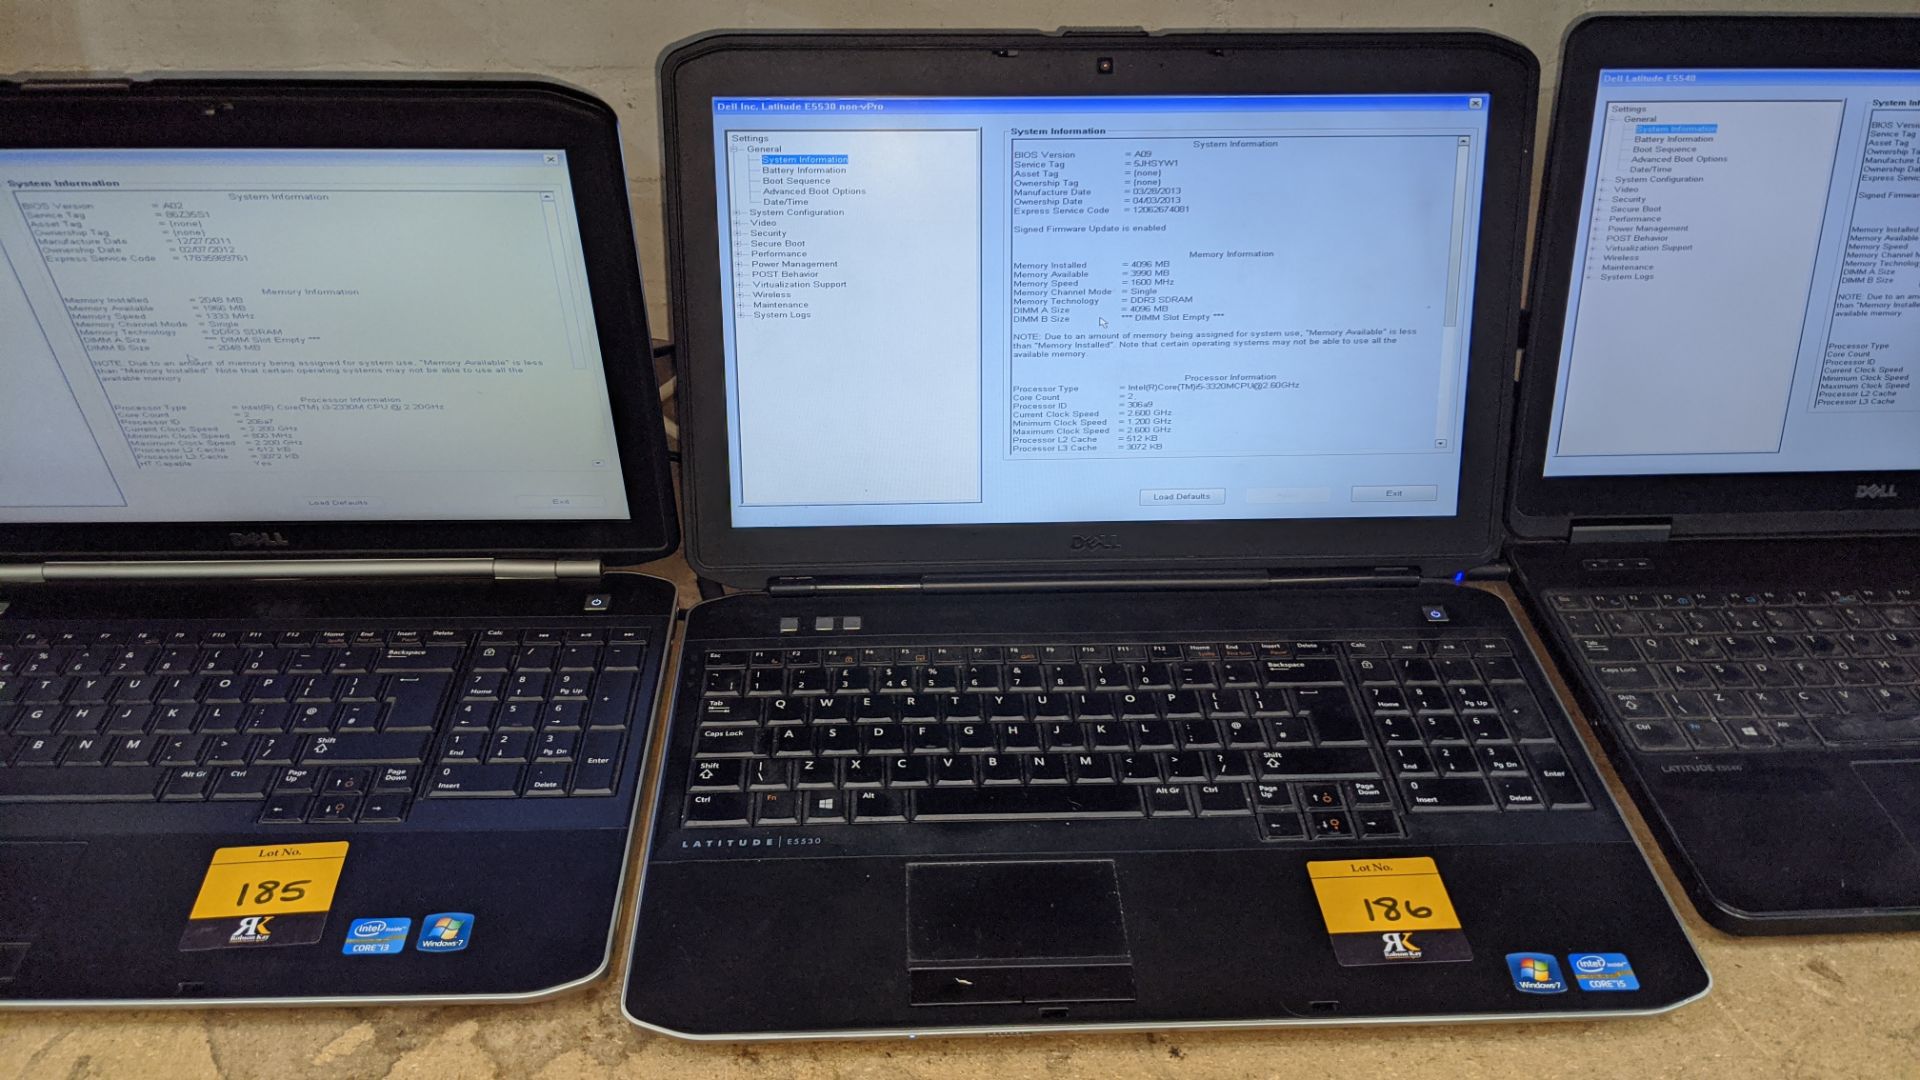 Dell Latitude E5530 notebook computer with Intel Core i5-3320 processor, 4Gb RAM, 500Gb hard drive, - Image 2 of 7